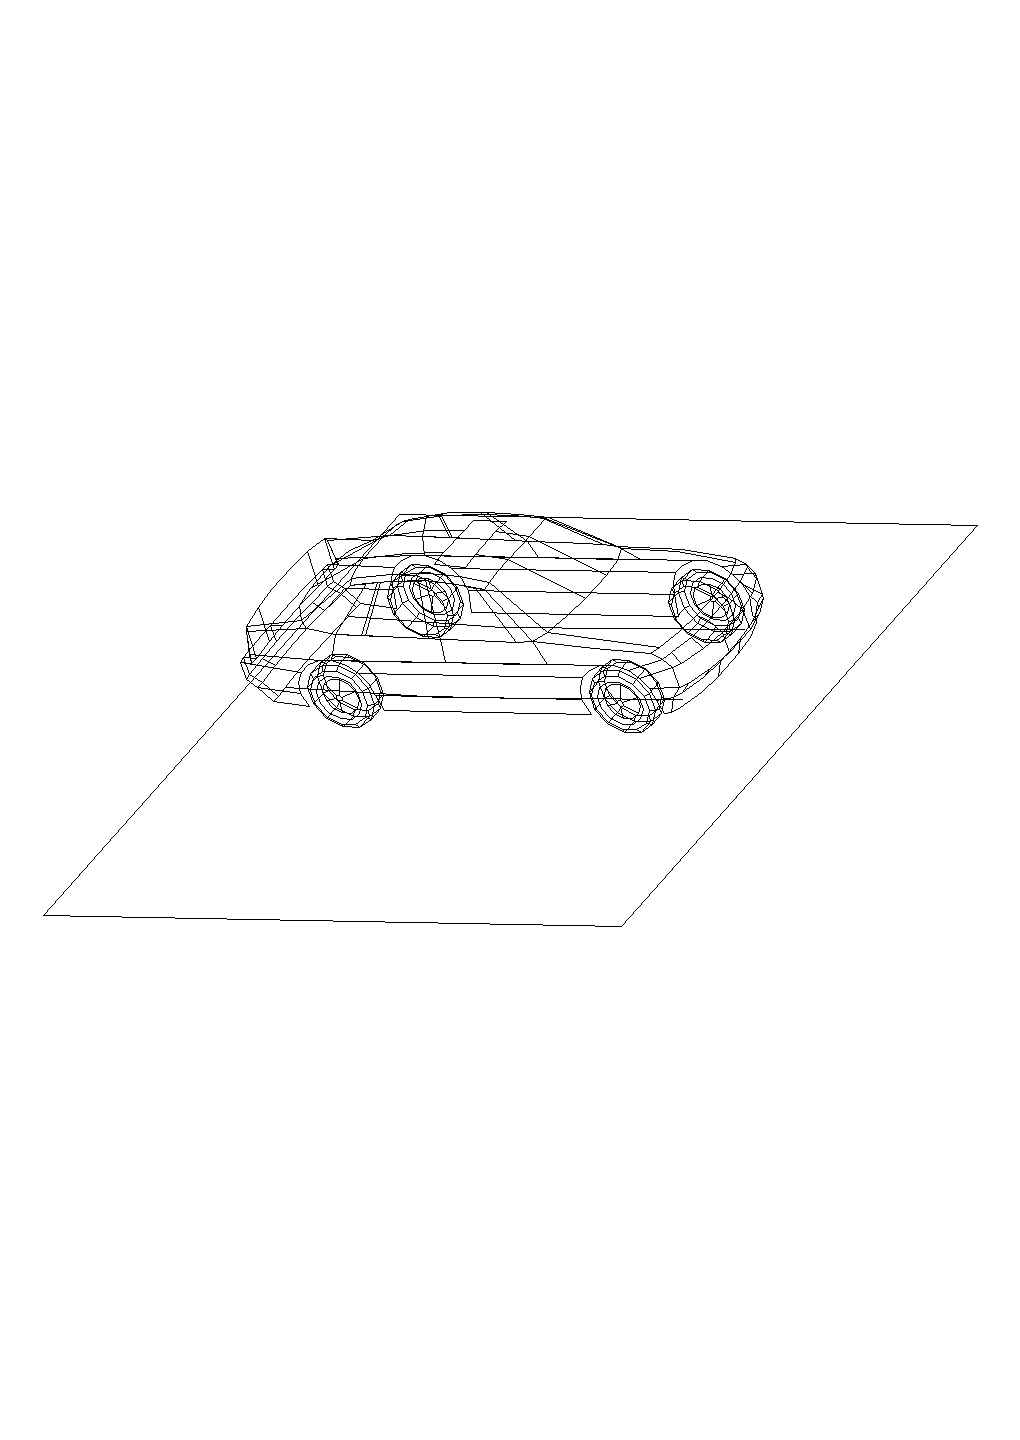 某汽车三维模型CAD施工完整节点图纸